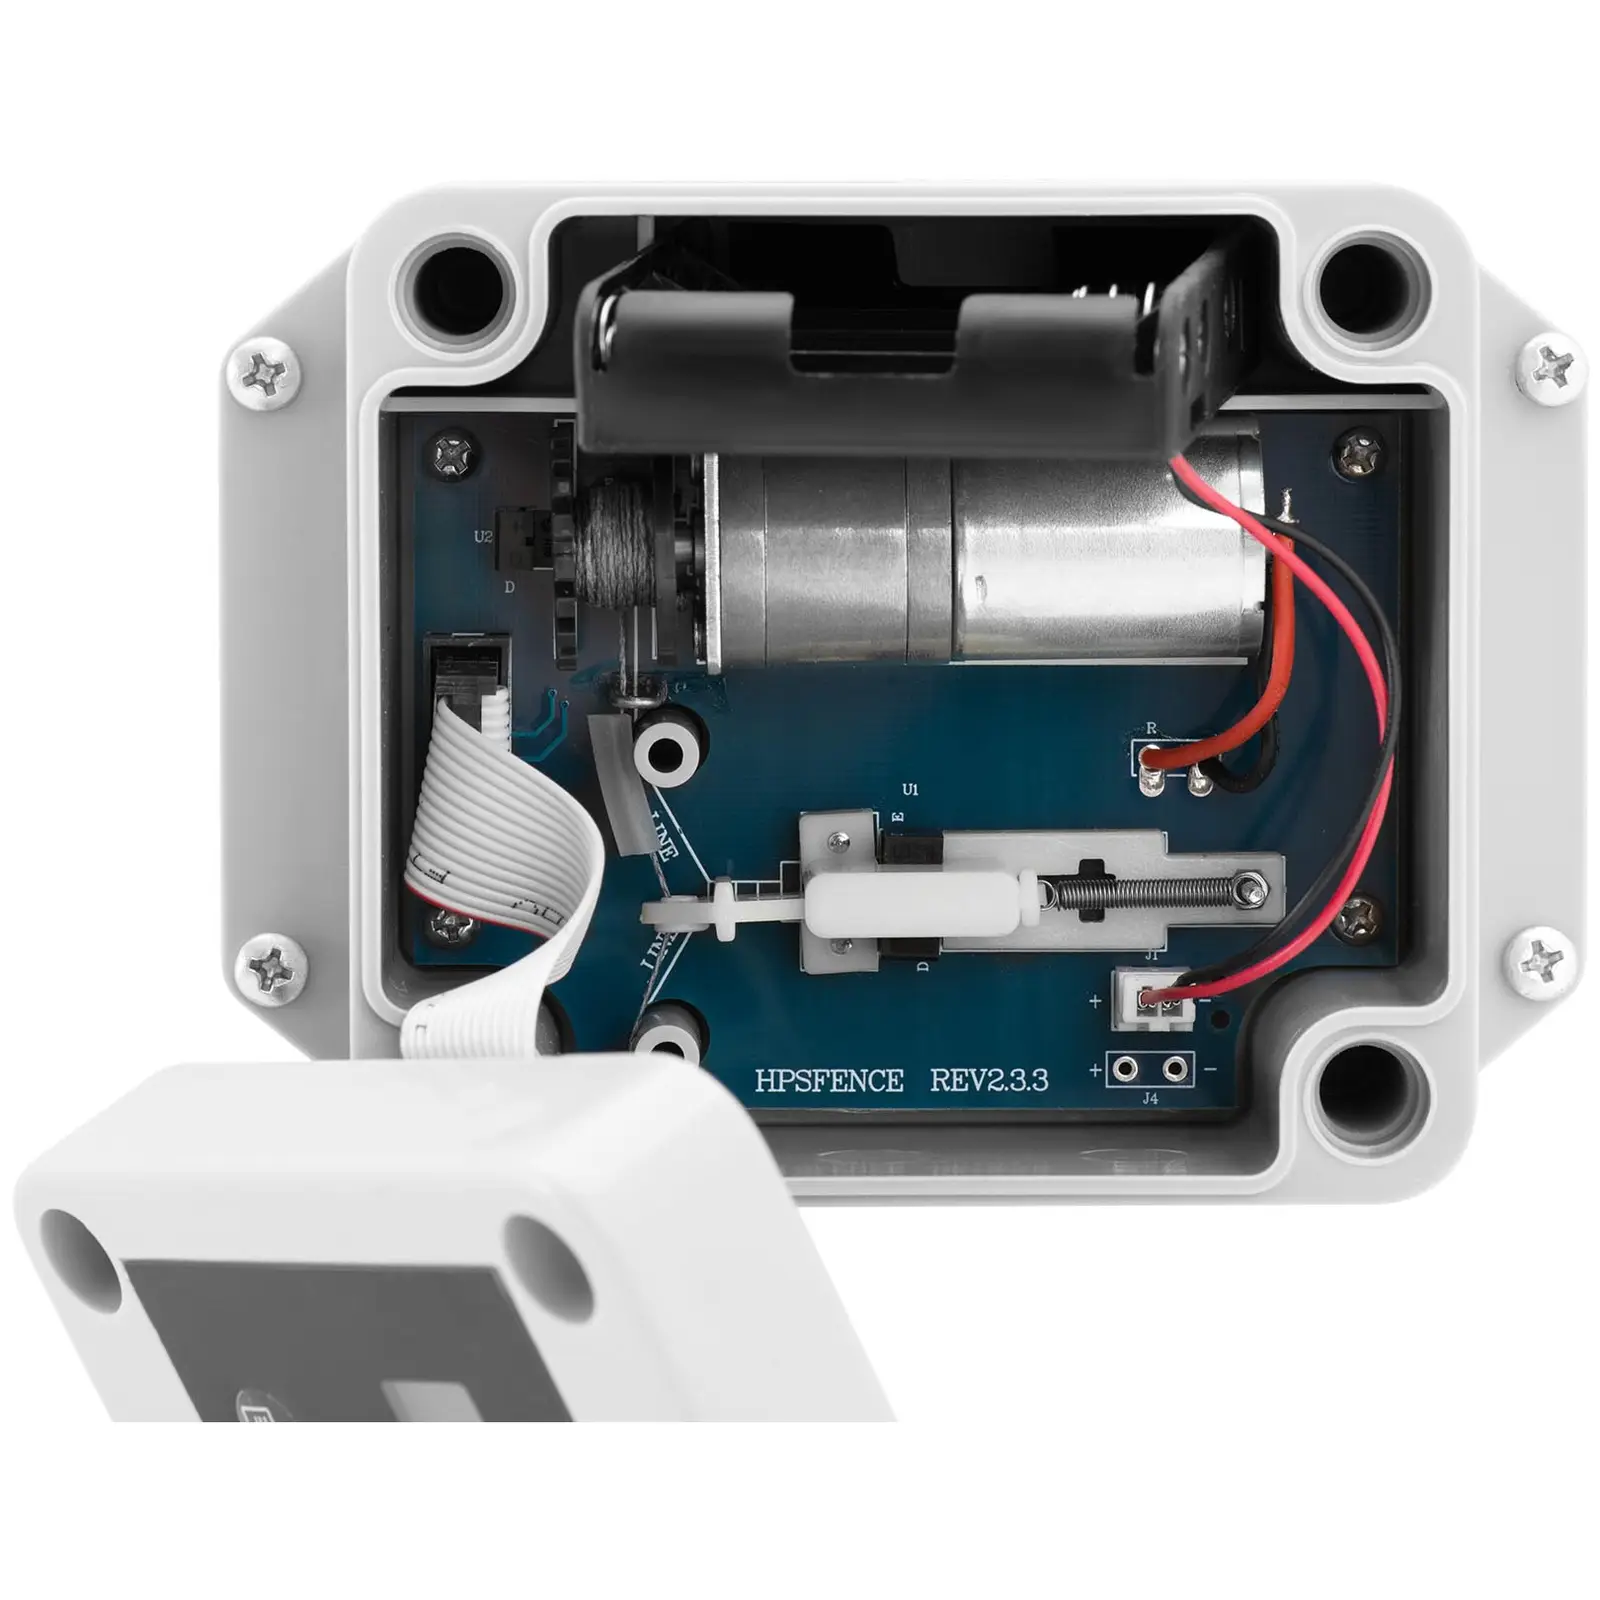 Porte automatique - minuterie / capteur de lumière - fonctionne sur piles - boîtier étanche - mesure exacte de la valeur lumineuse